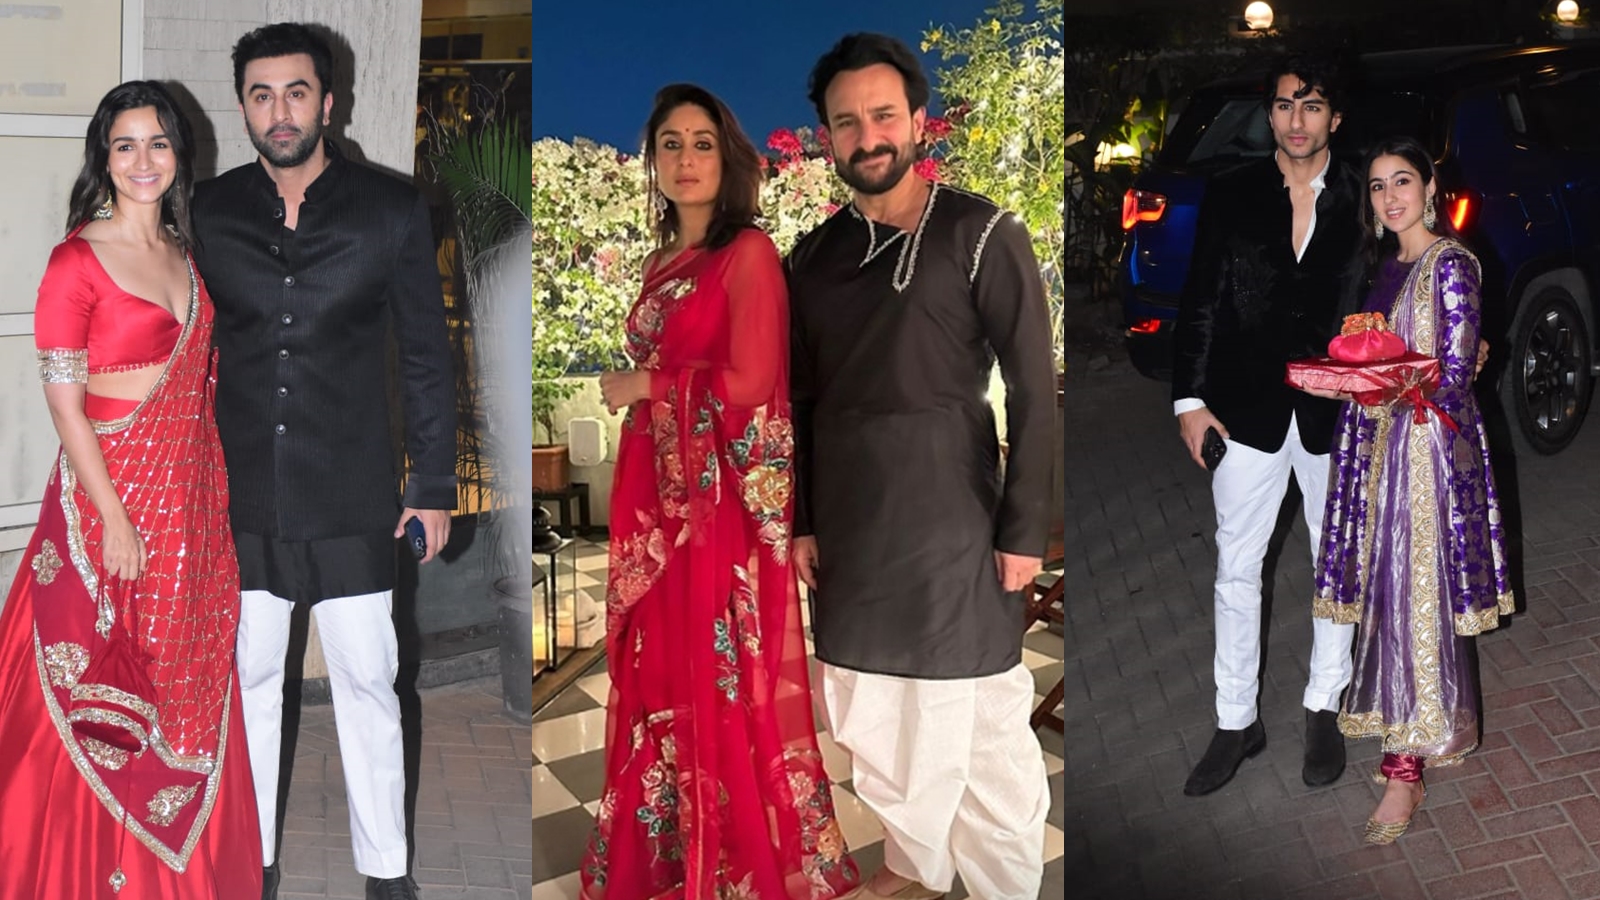 Alia Bhatt stops Ranbir Kapoor for a quick photo session at Kareena Kapoor-Saif Ali Khan’s Diwali bash, see pics and videos | Bollywood News